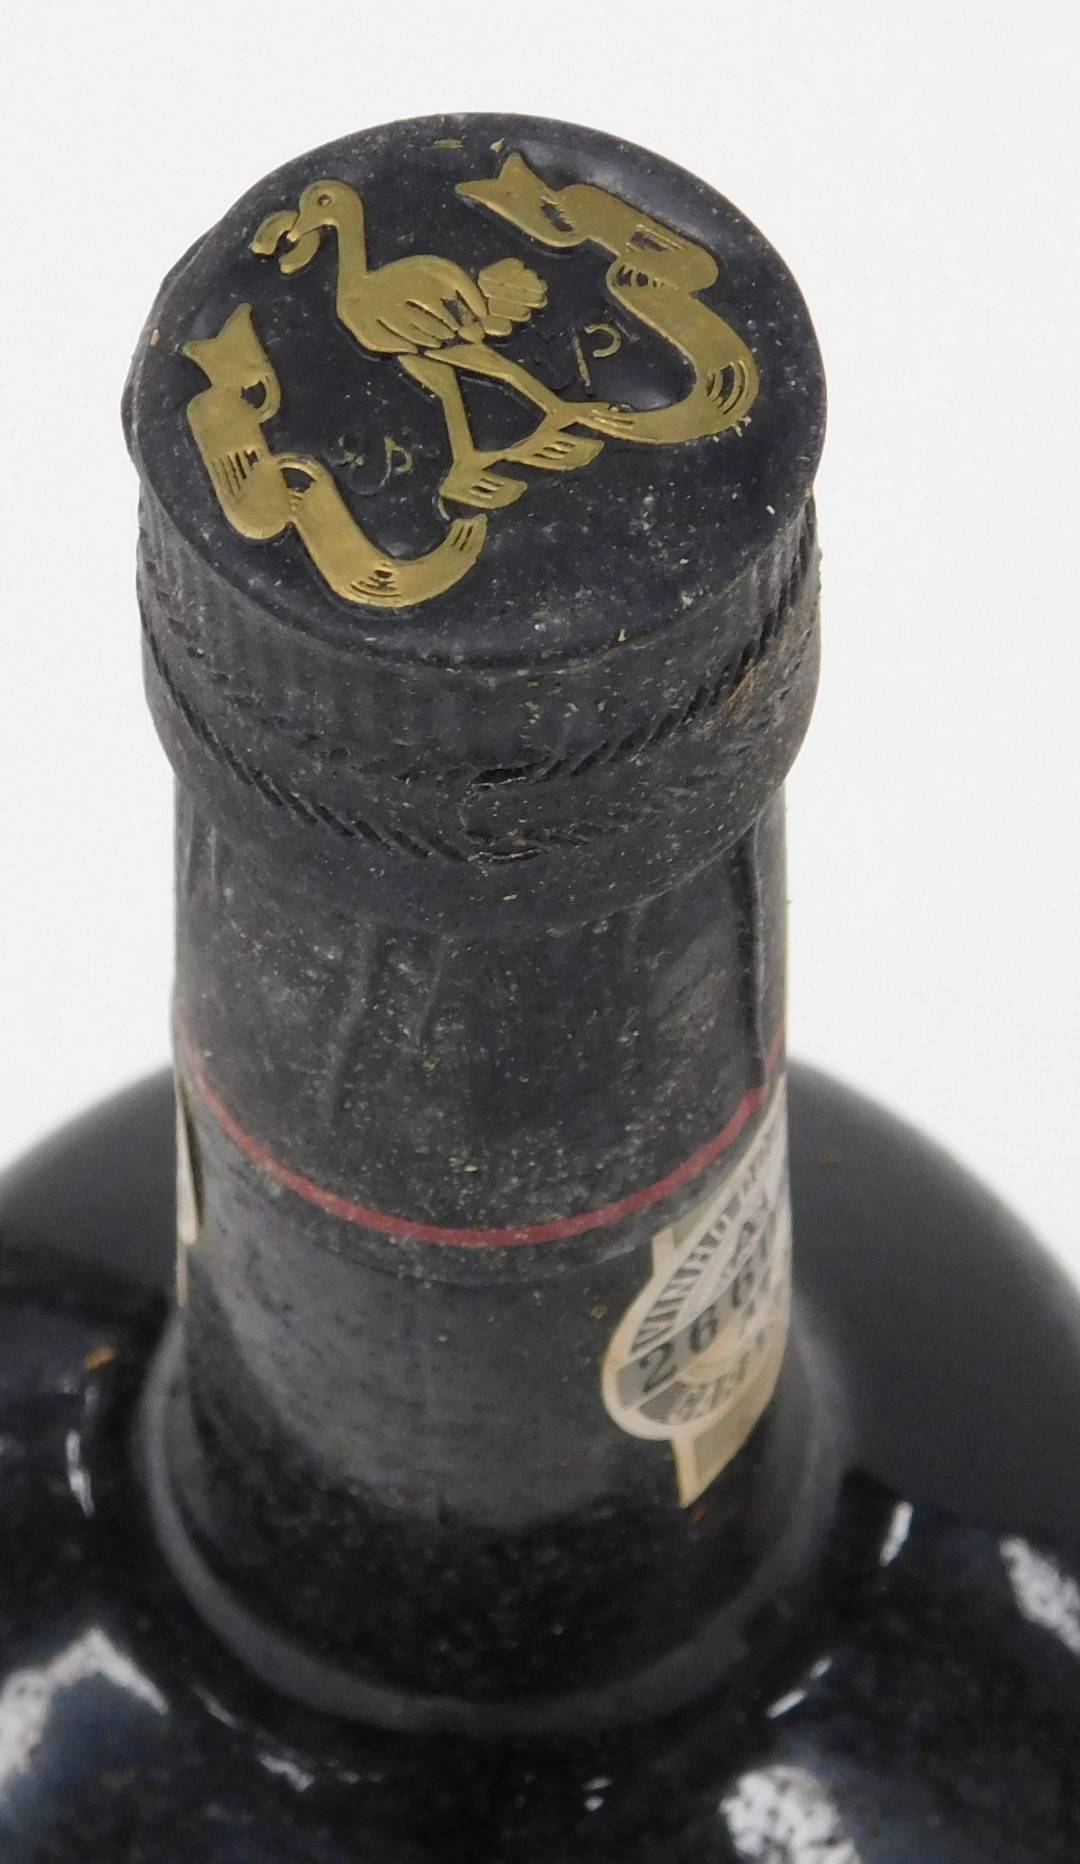 A bottle of Ferreira late bottled vintage port 1980, cased. - Image 4 of 4